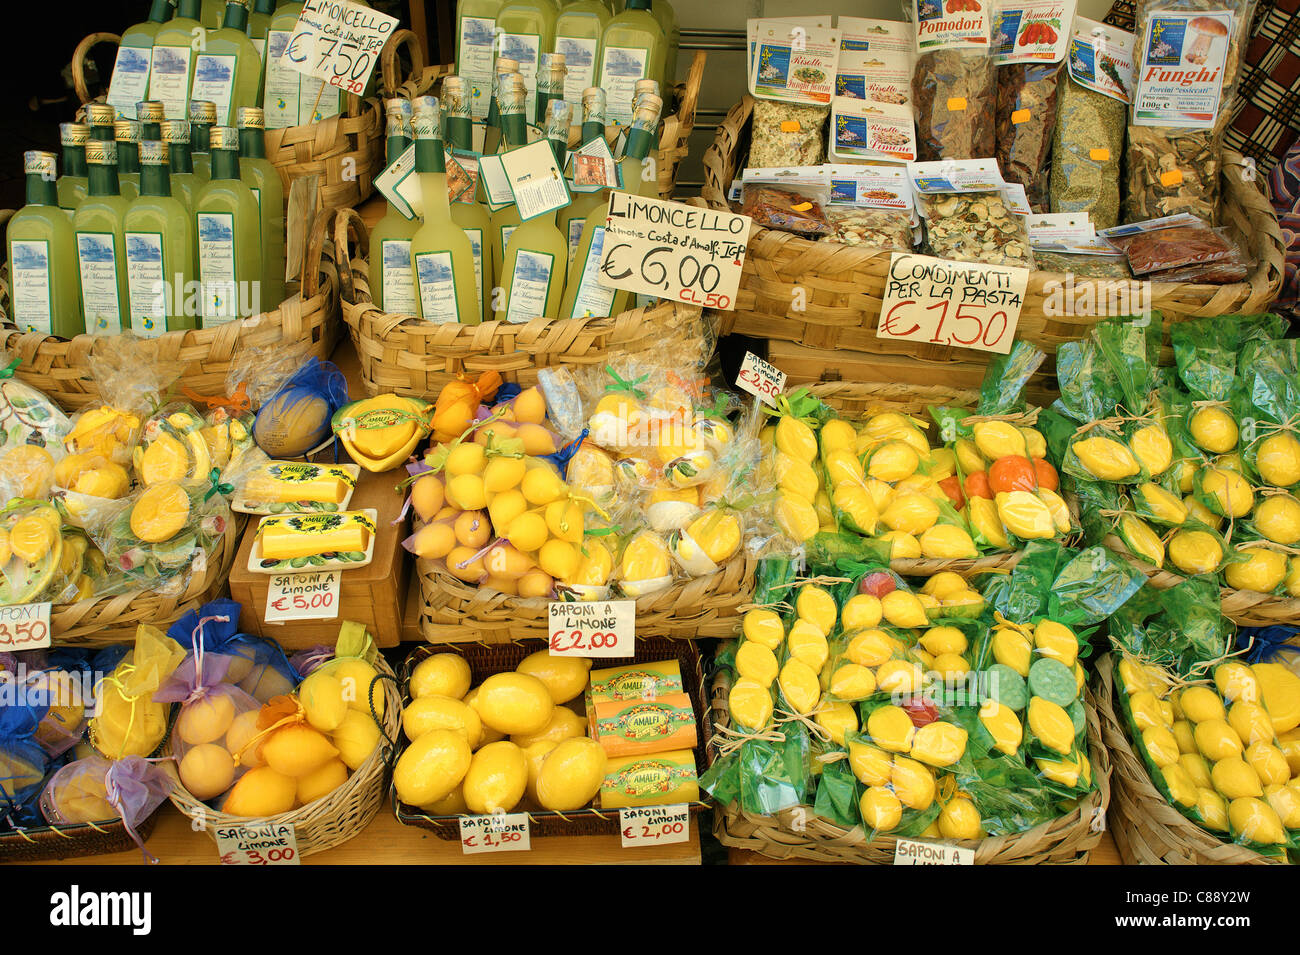 Lemon soap and limoncello liquor in a souvenir shop in Sorrento Italy Stock Photo